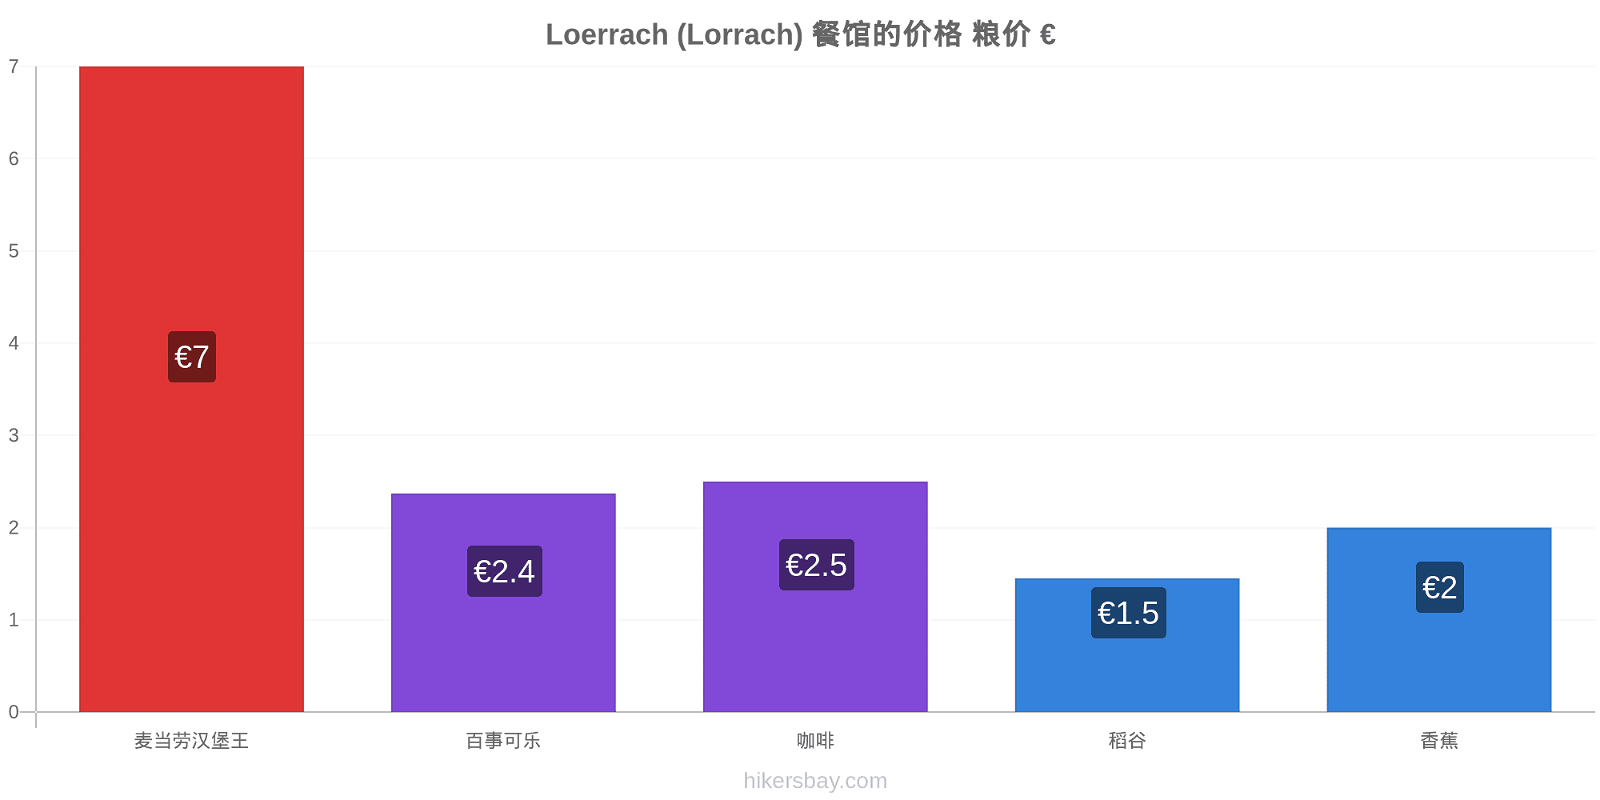 Loerrach (Lorrach) 价格变动 hikersbay.com